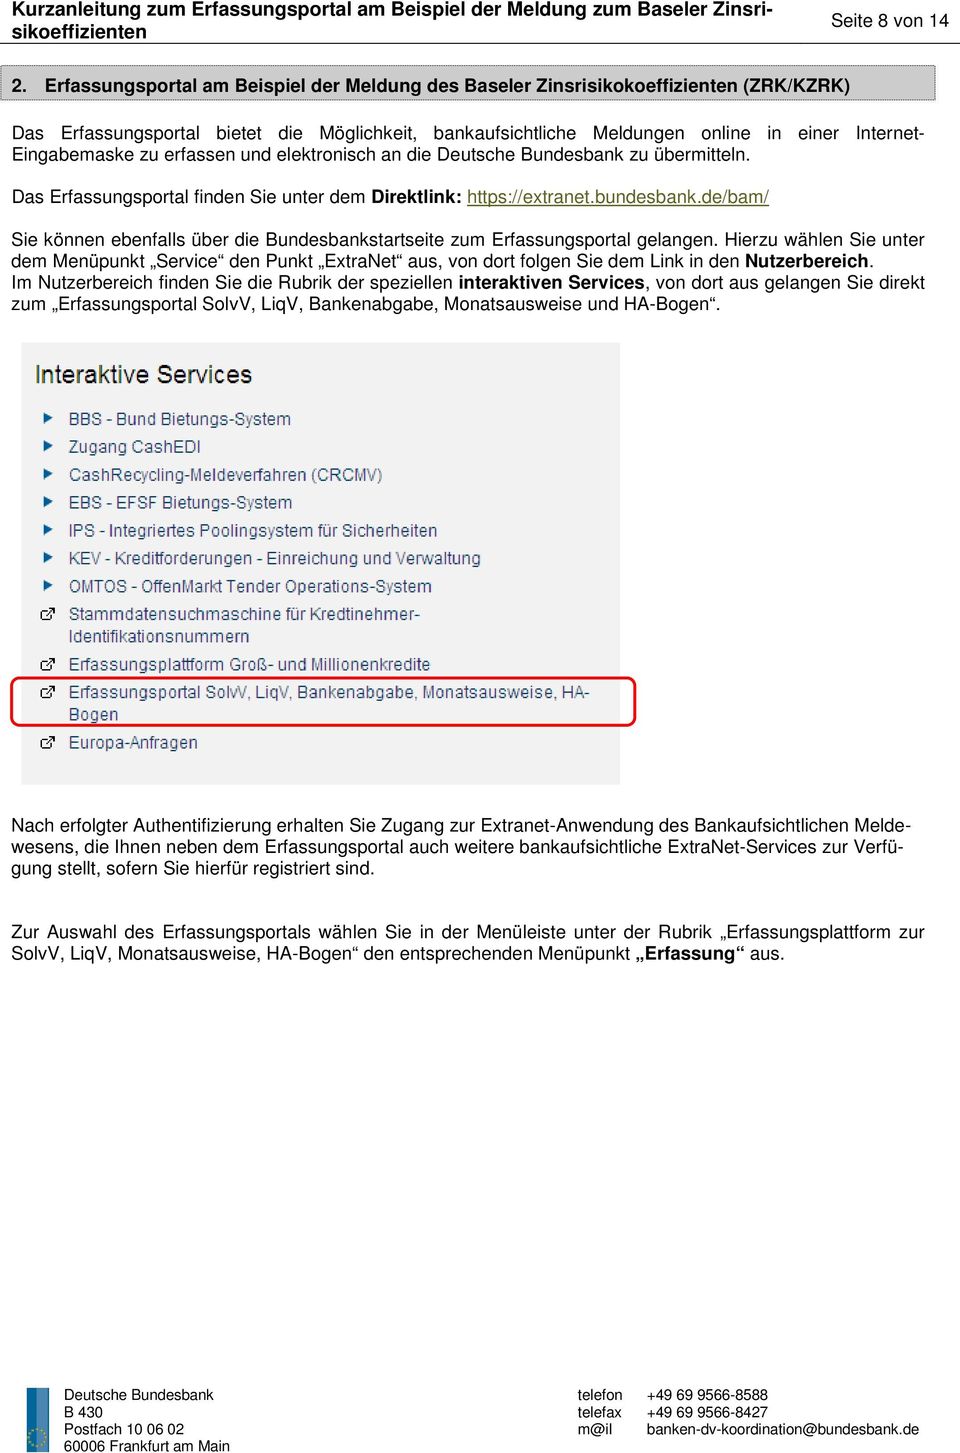 zu erfassen und elektronisch an die Deutsche Bundesbank zu übermitteln. Das Erfassungsportal finden Sie unter dem Direktlink: https://extranet.bundesbank.